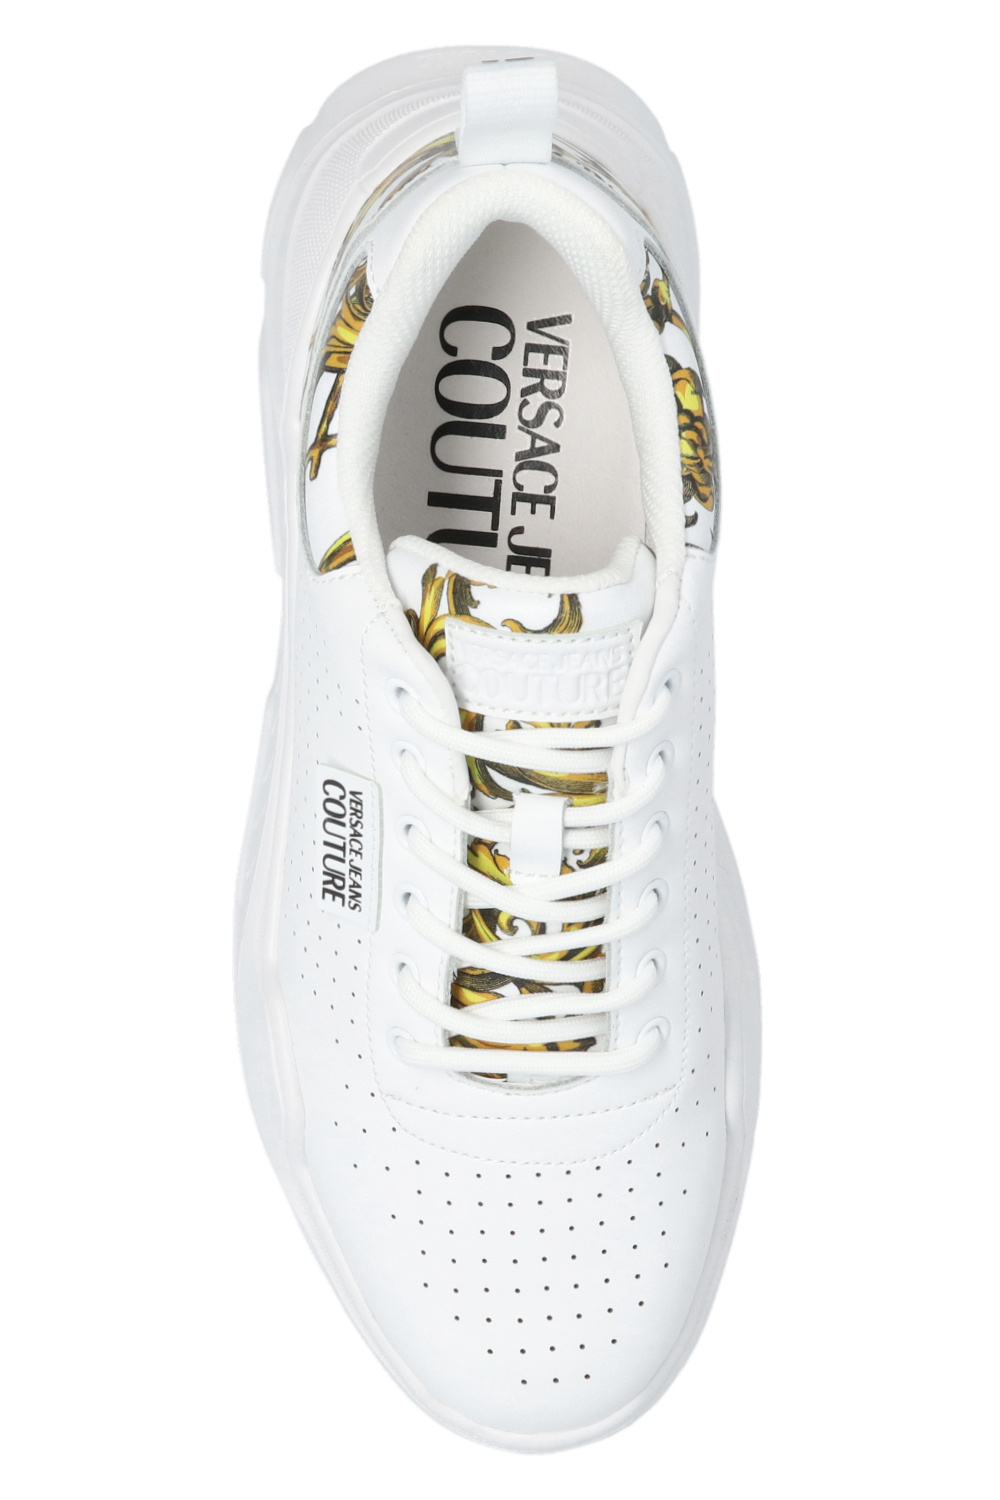 zapatillas de running Adidas pie cavo talla 48 blancas ‘Regalia Baroque’ printed sneakers